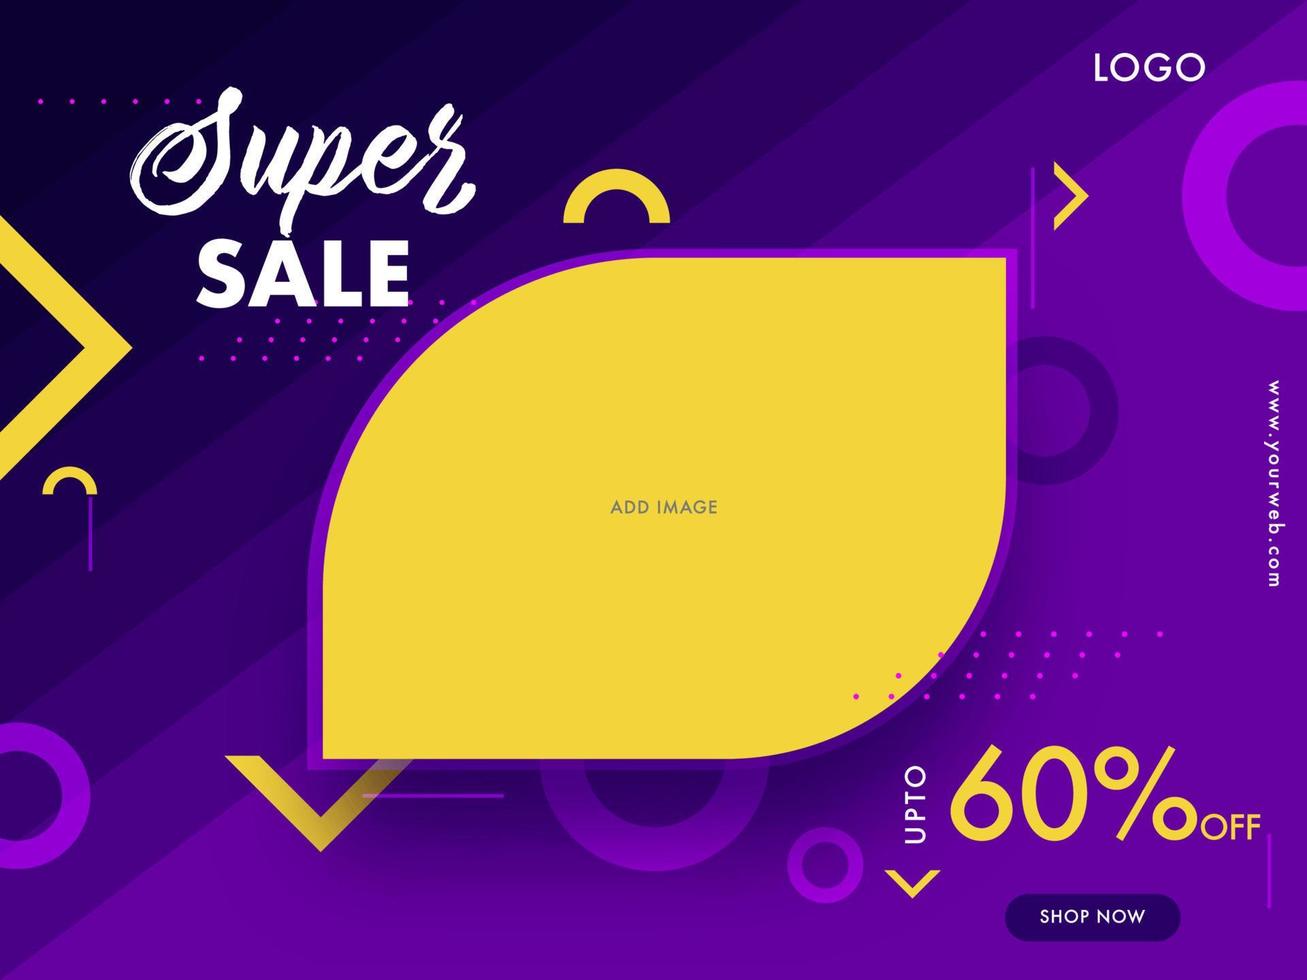 Super Verkauf Banner oder Poster Design mit Rabatt Angebot und Raum zum Ihre Produkt Bild auf lila abstrakt Hintergrund. vektor